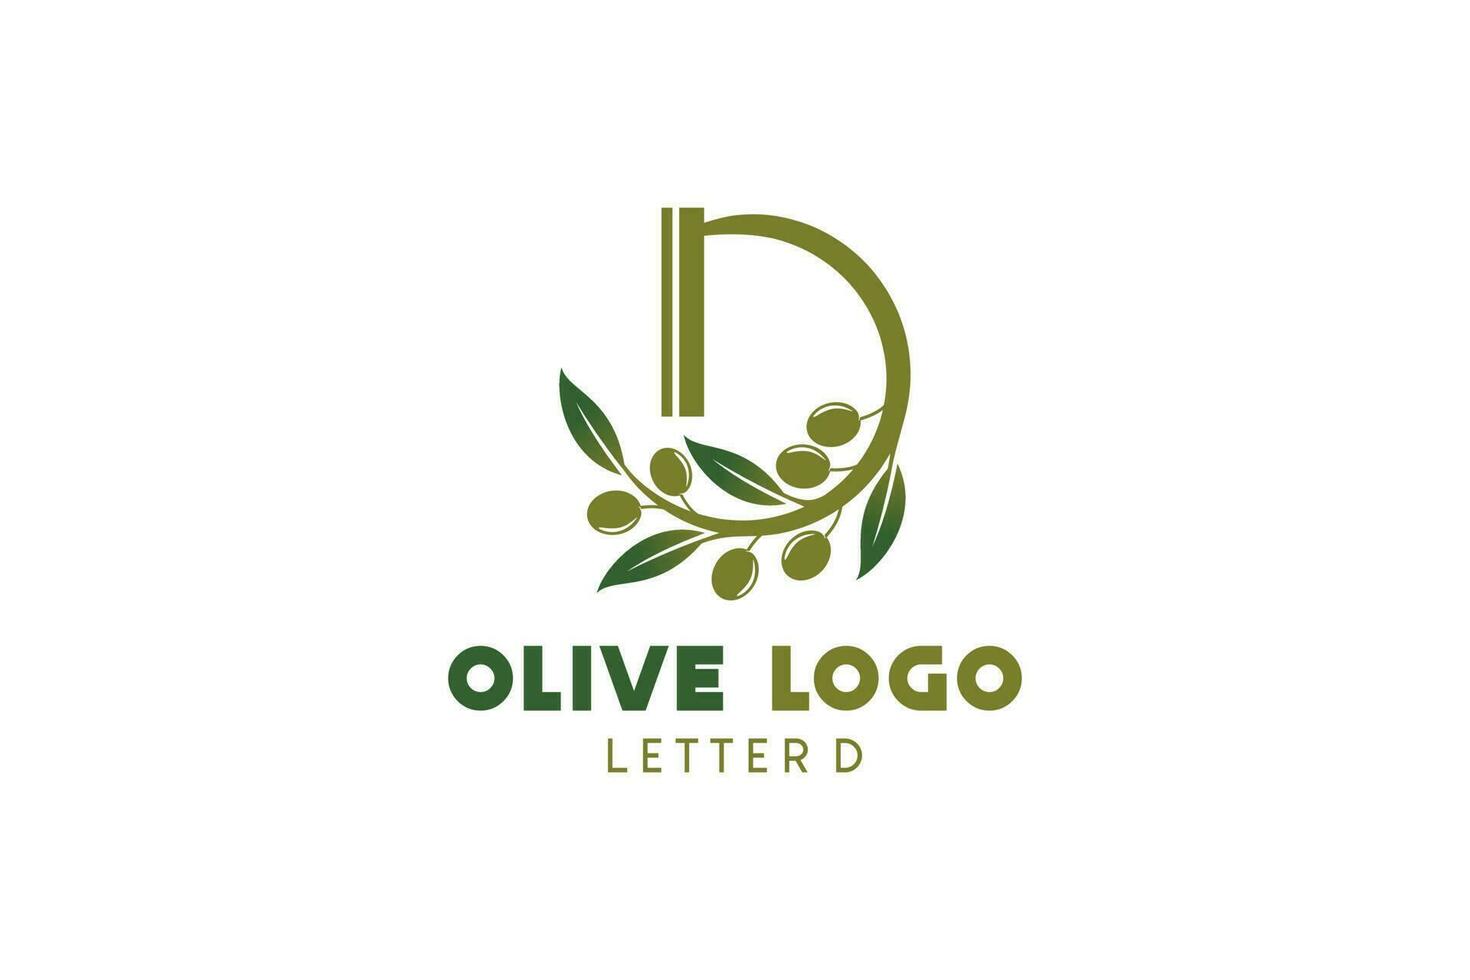 Oliva logotipo Projeto com carta d conceito, natural verde Oliva vetor ilustração